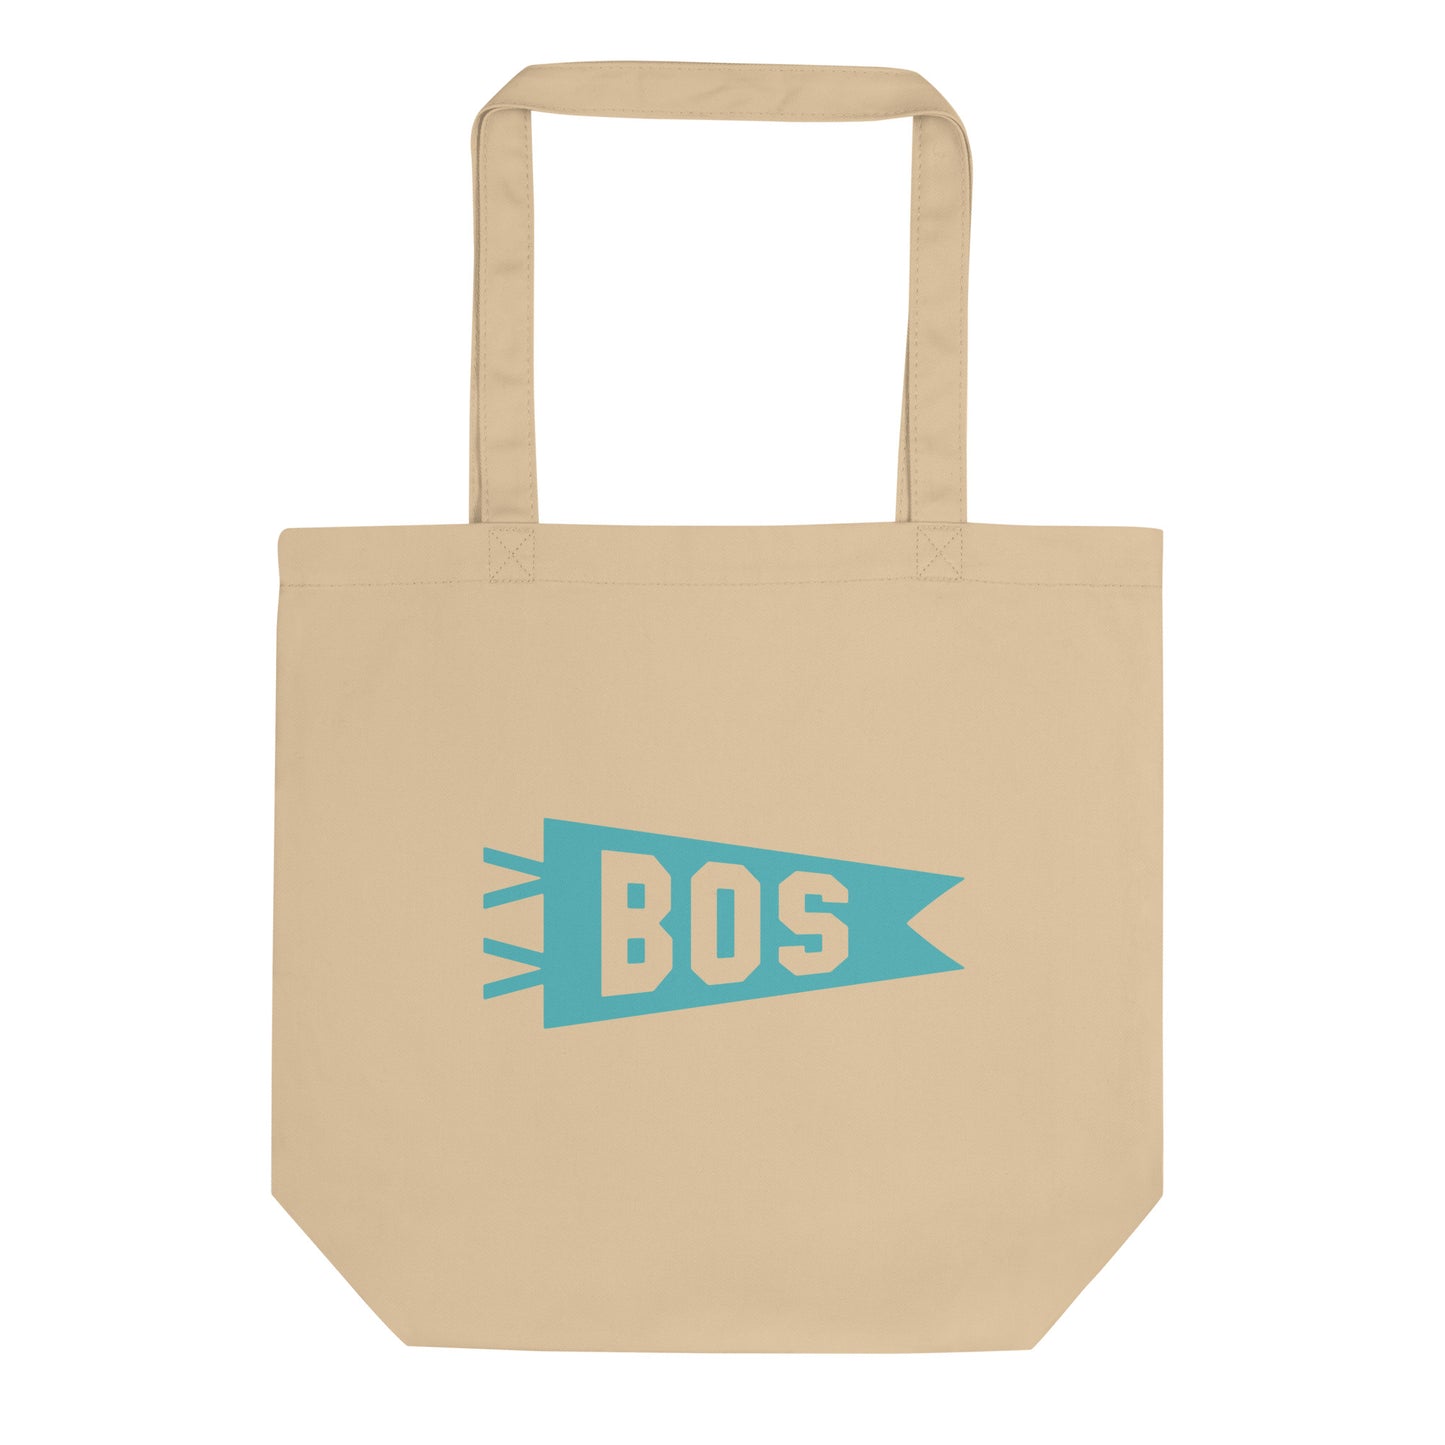 Cool Travel Gift Organic Tote Bag - Viking Blue • BOS Boston • YHM Designs - Image 01